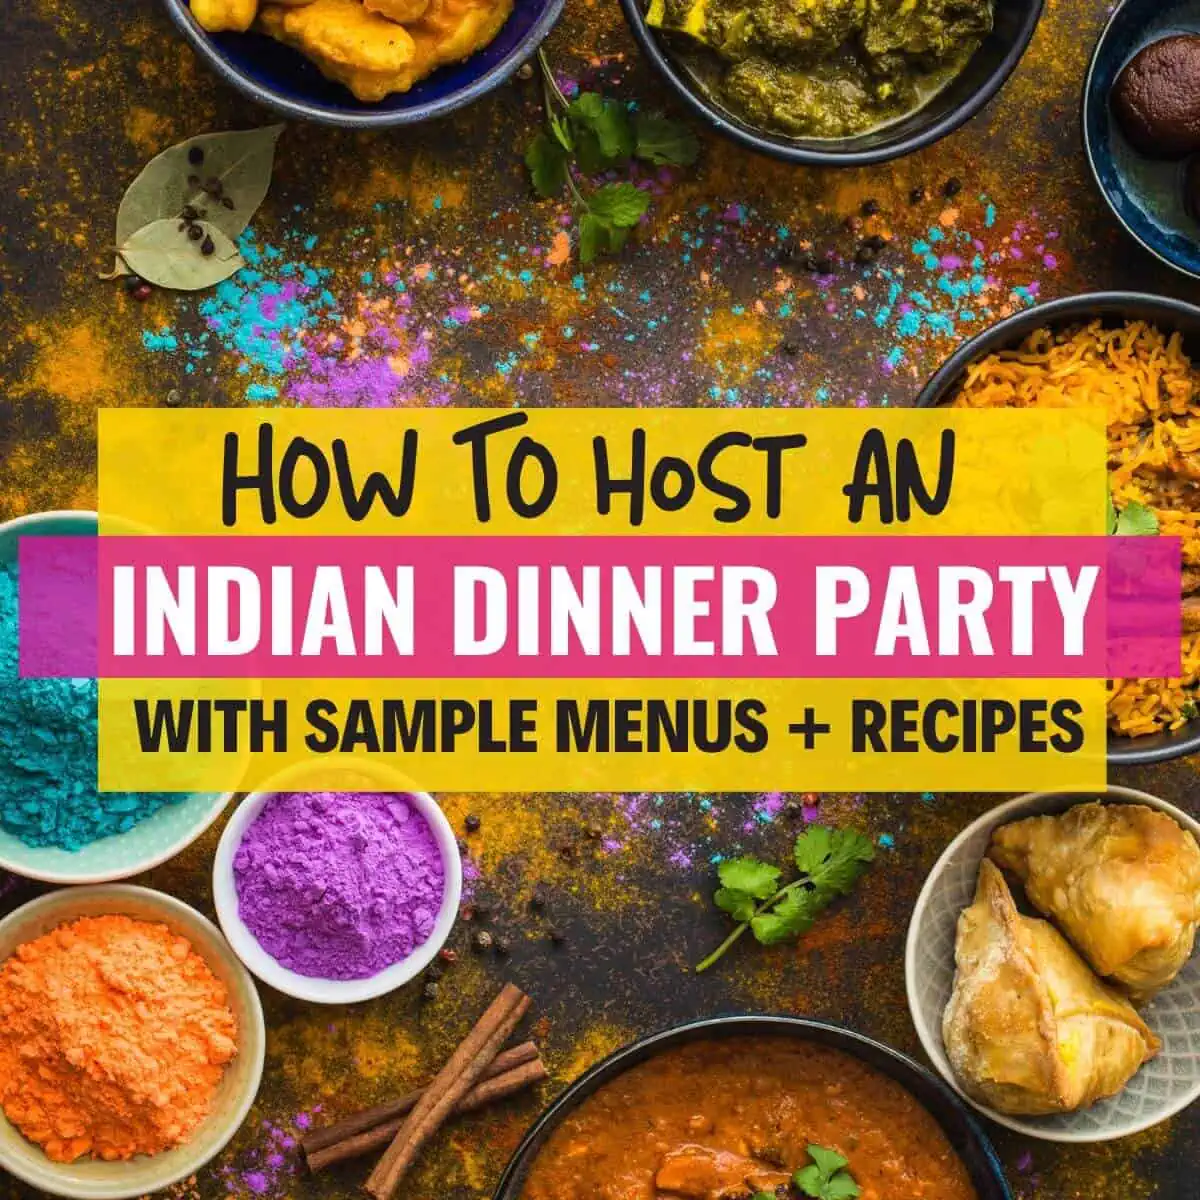 Una imagen con mucha comida india y con un pie de foto que dice cómo hacer una cena india - Obtenga ideas de menús y recetas